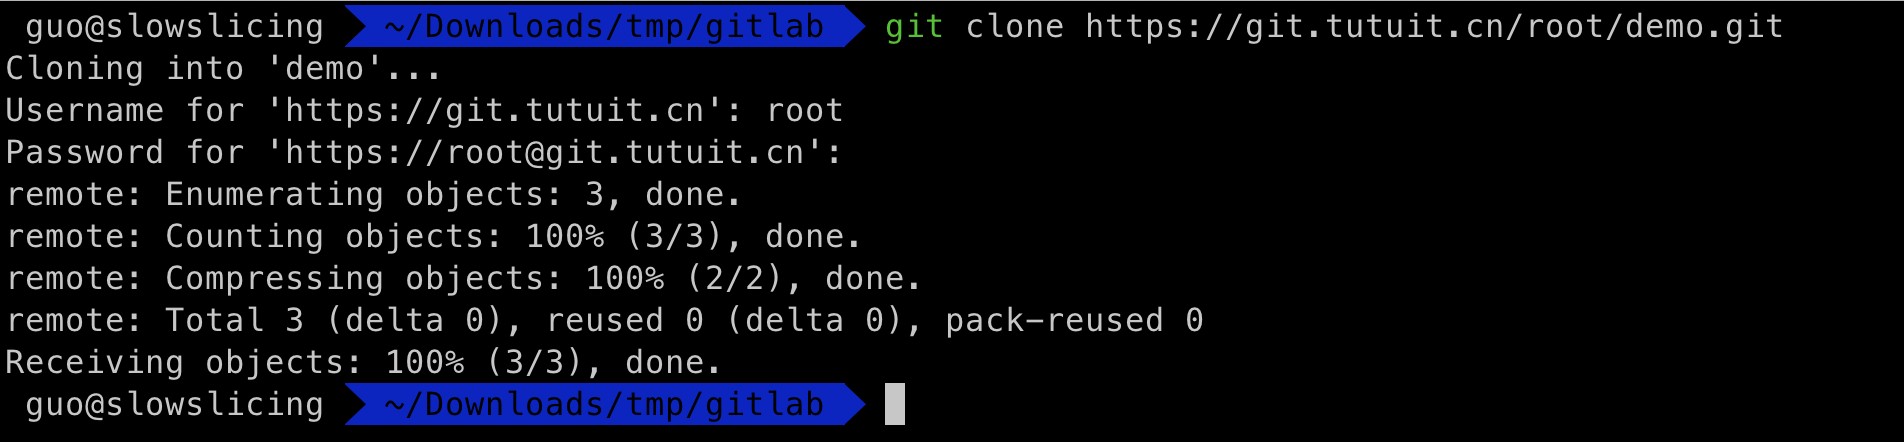 Gitlab 安装全流程